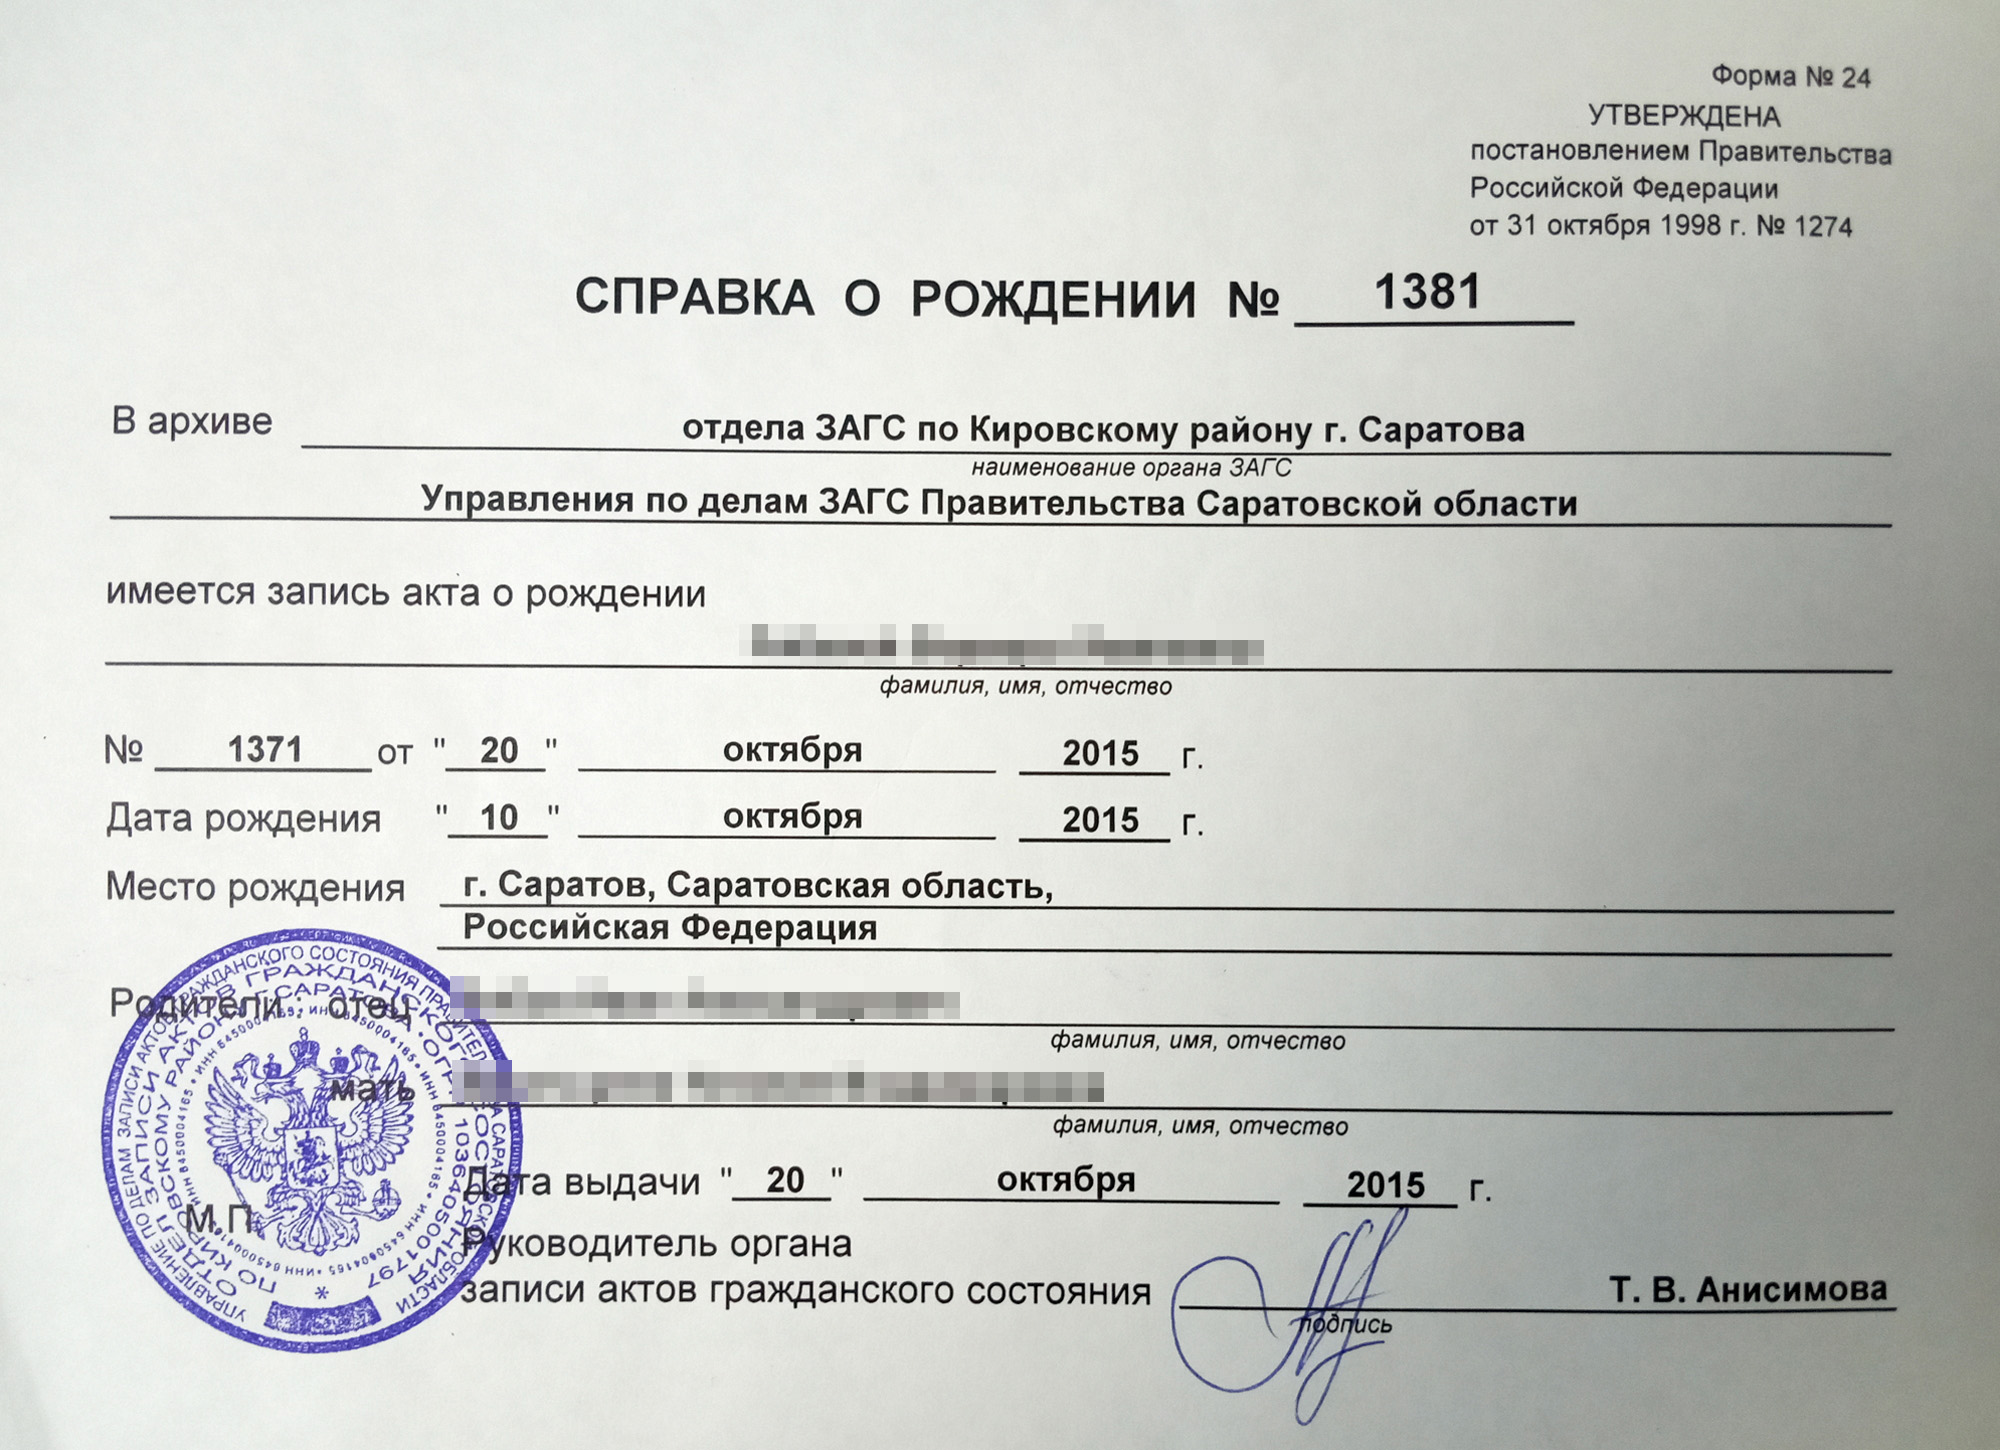 Как взять в кредит деньги в банке если не работаешь официально в москве